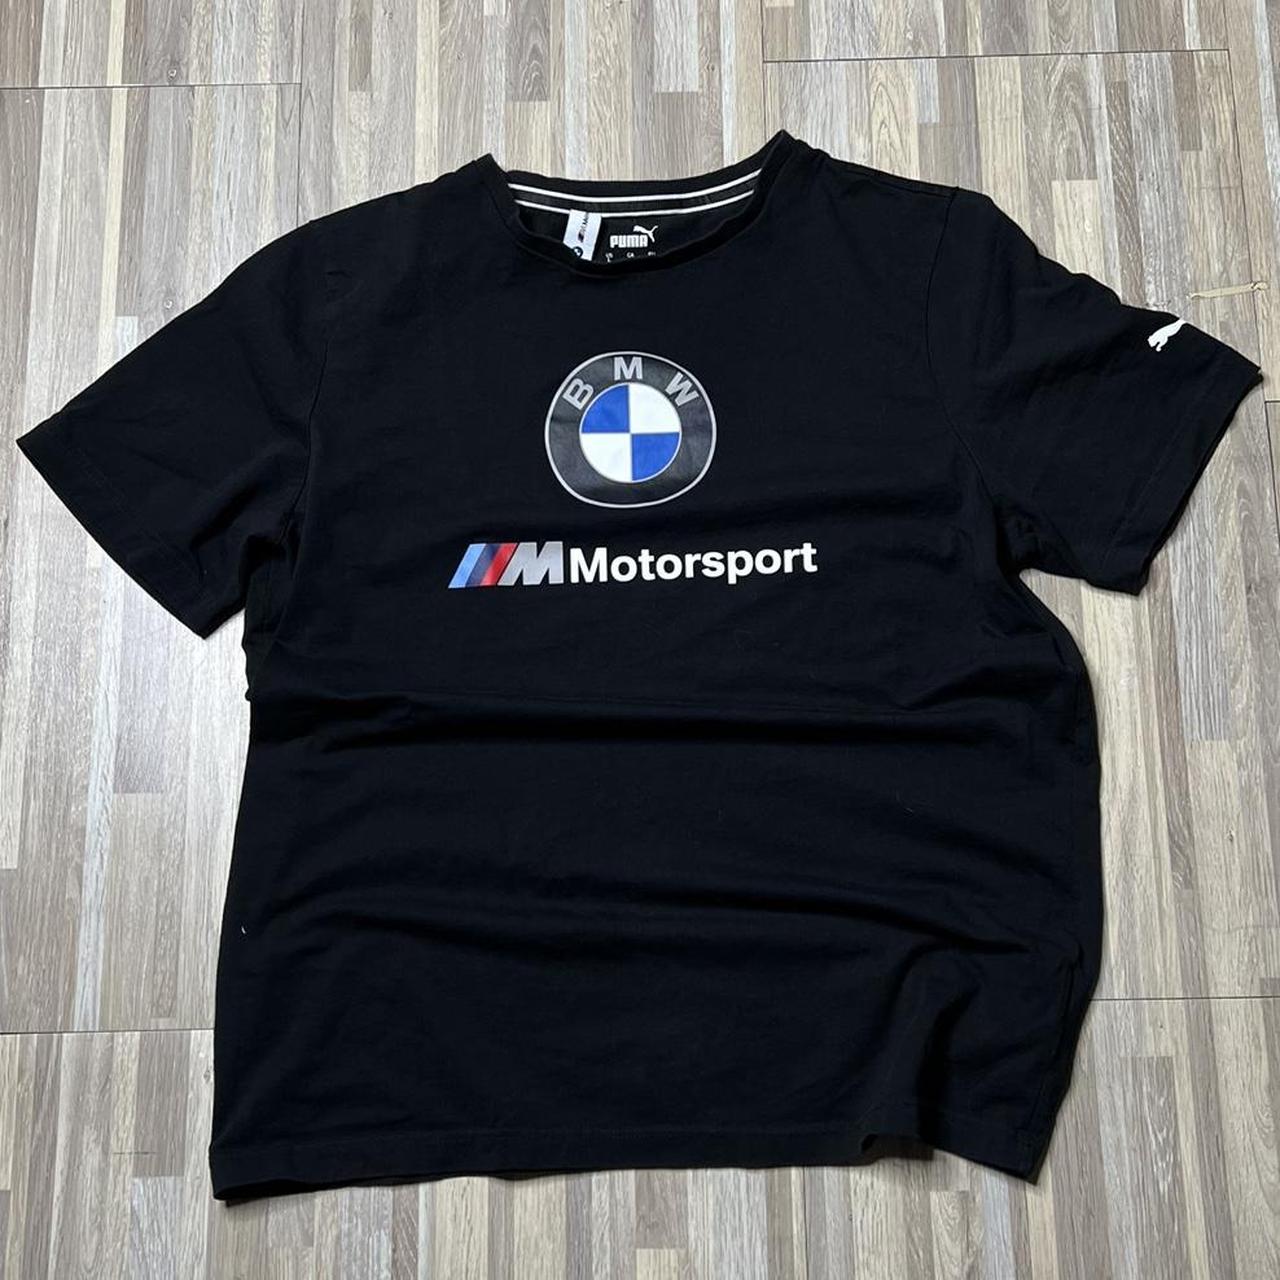 Puma X BMW Motorsport Logo Car Shirt Very Breathable... - Depop